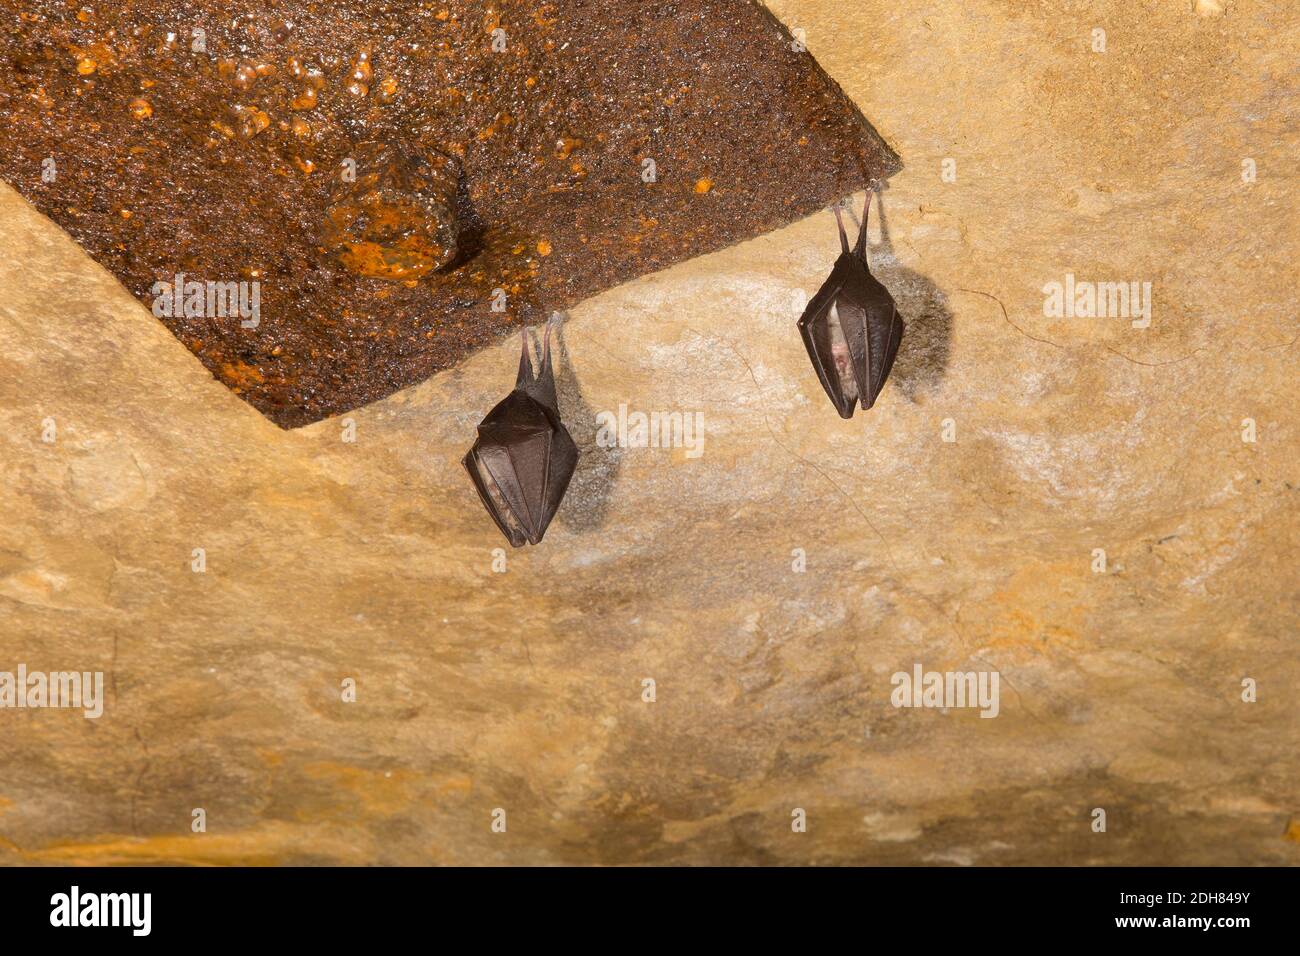 Lesser horseshoe bat (Rhinolophus hipposideros), two lesser horseshoe bats hibernate at a cave, France Stock Photo